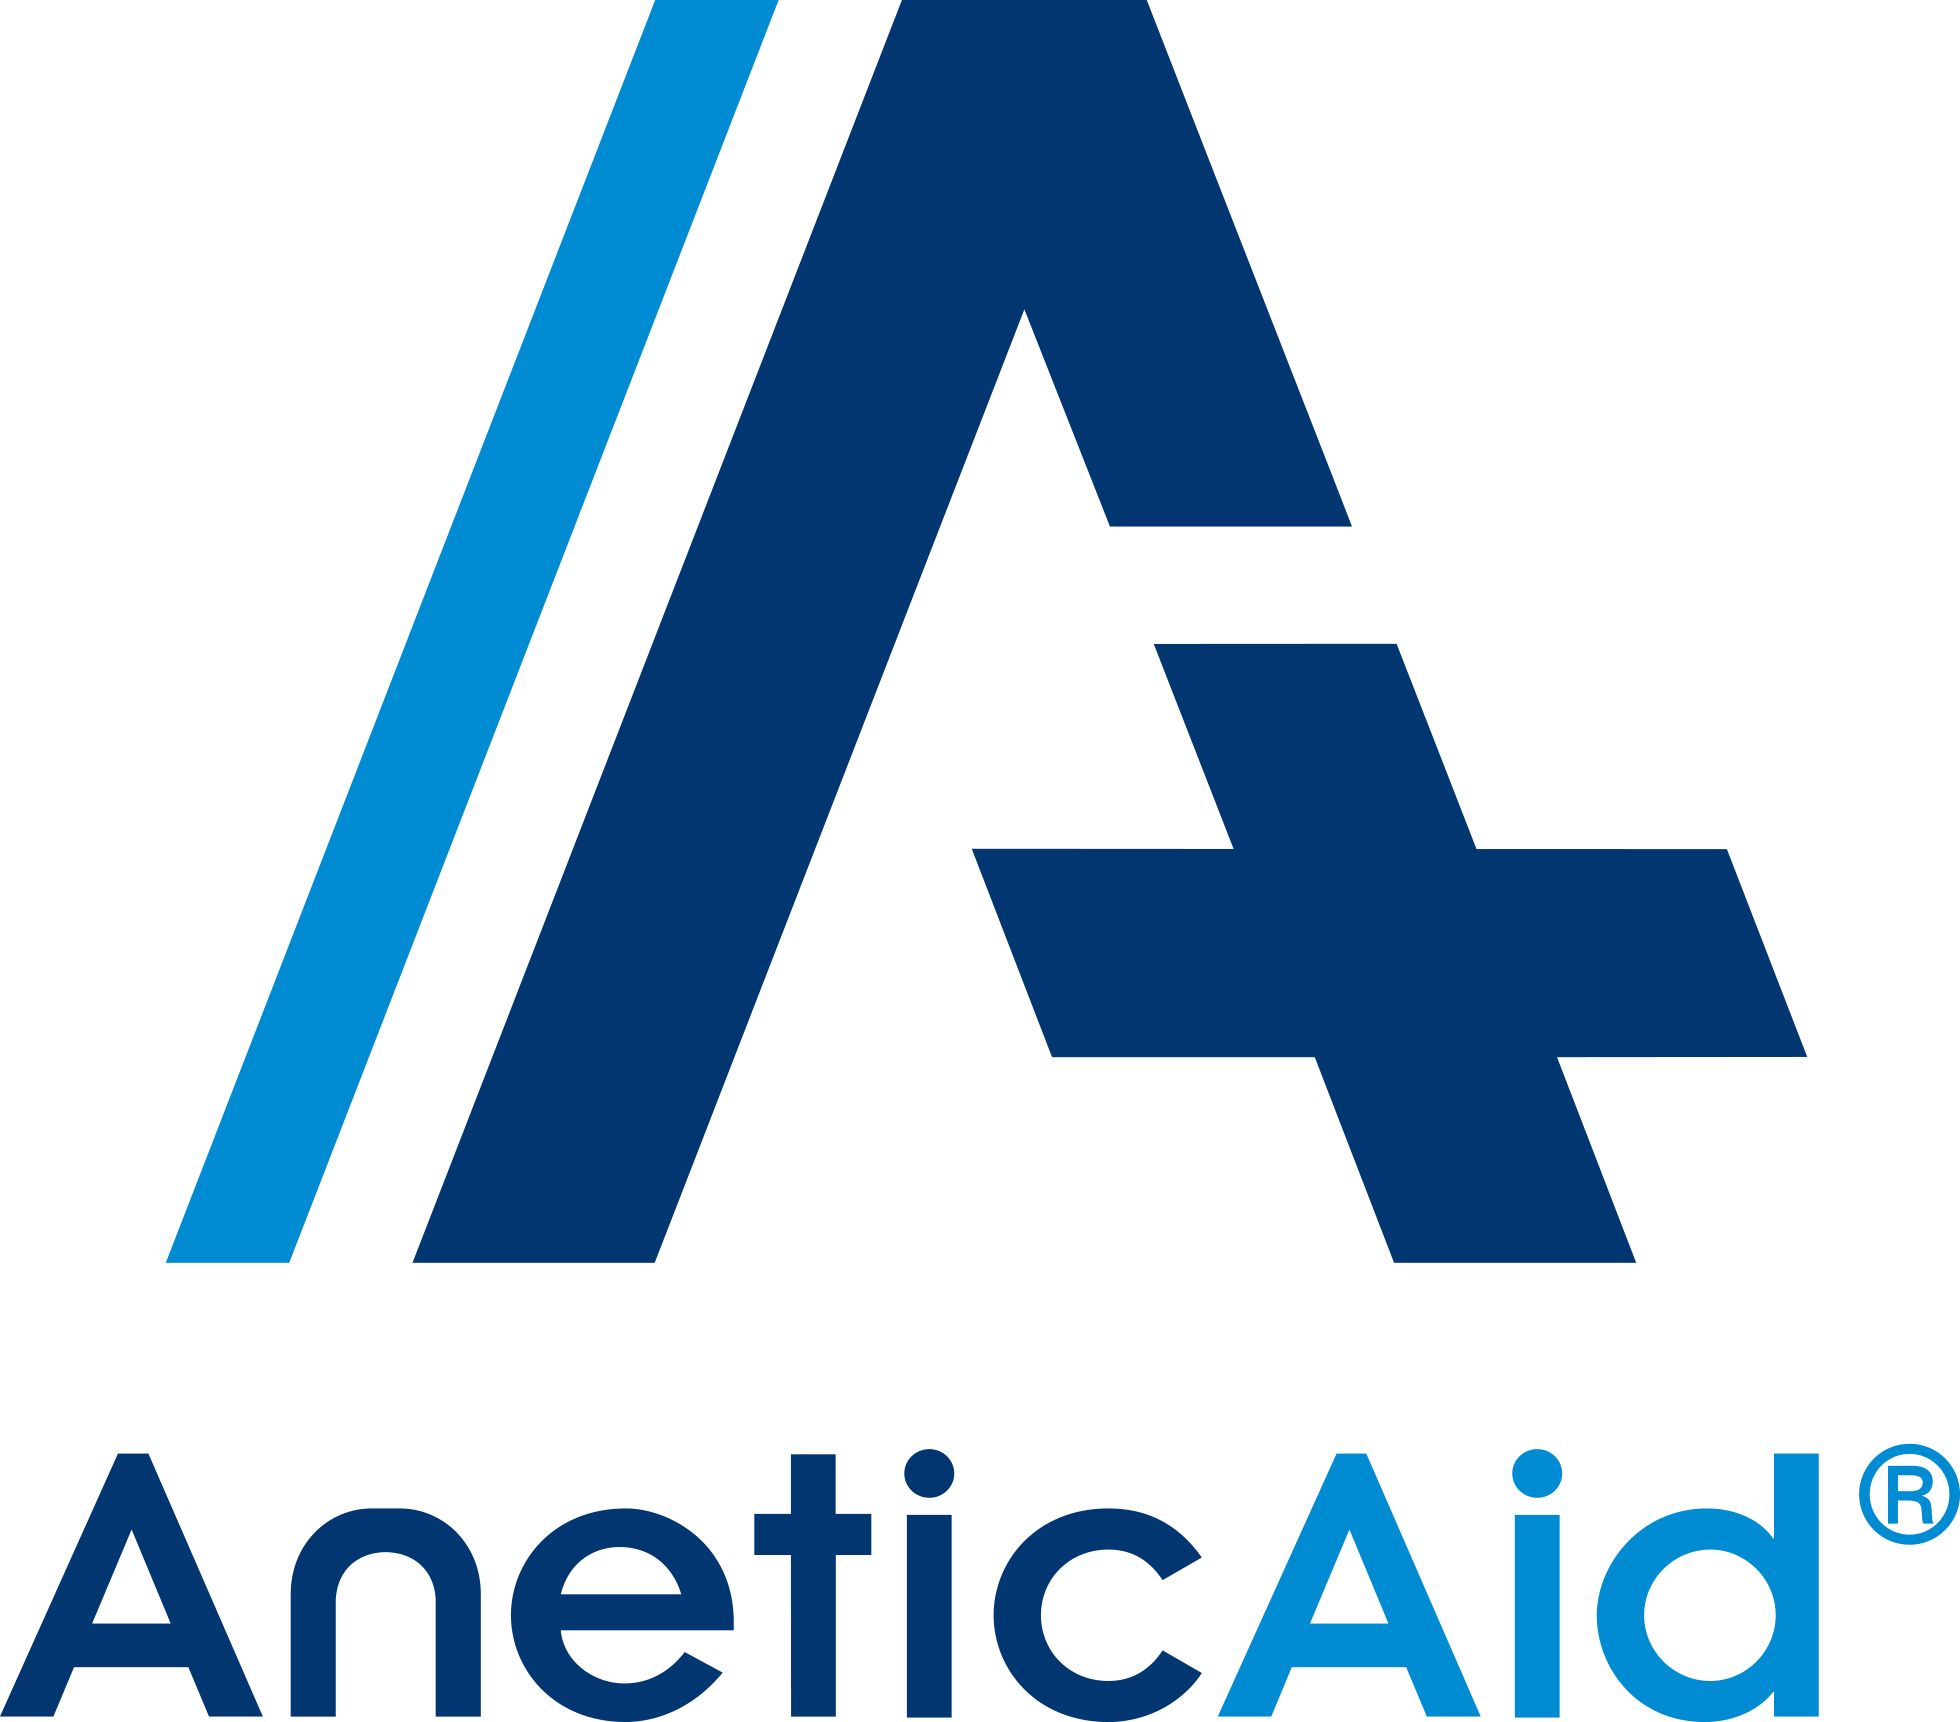 Anetic Aid Ltd